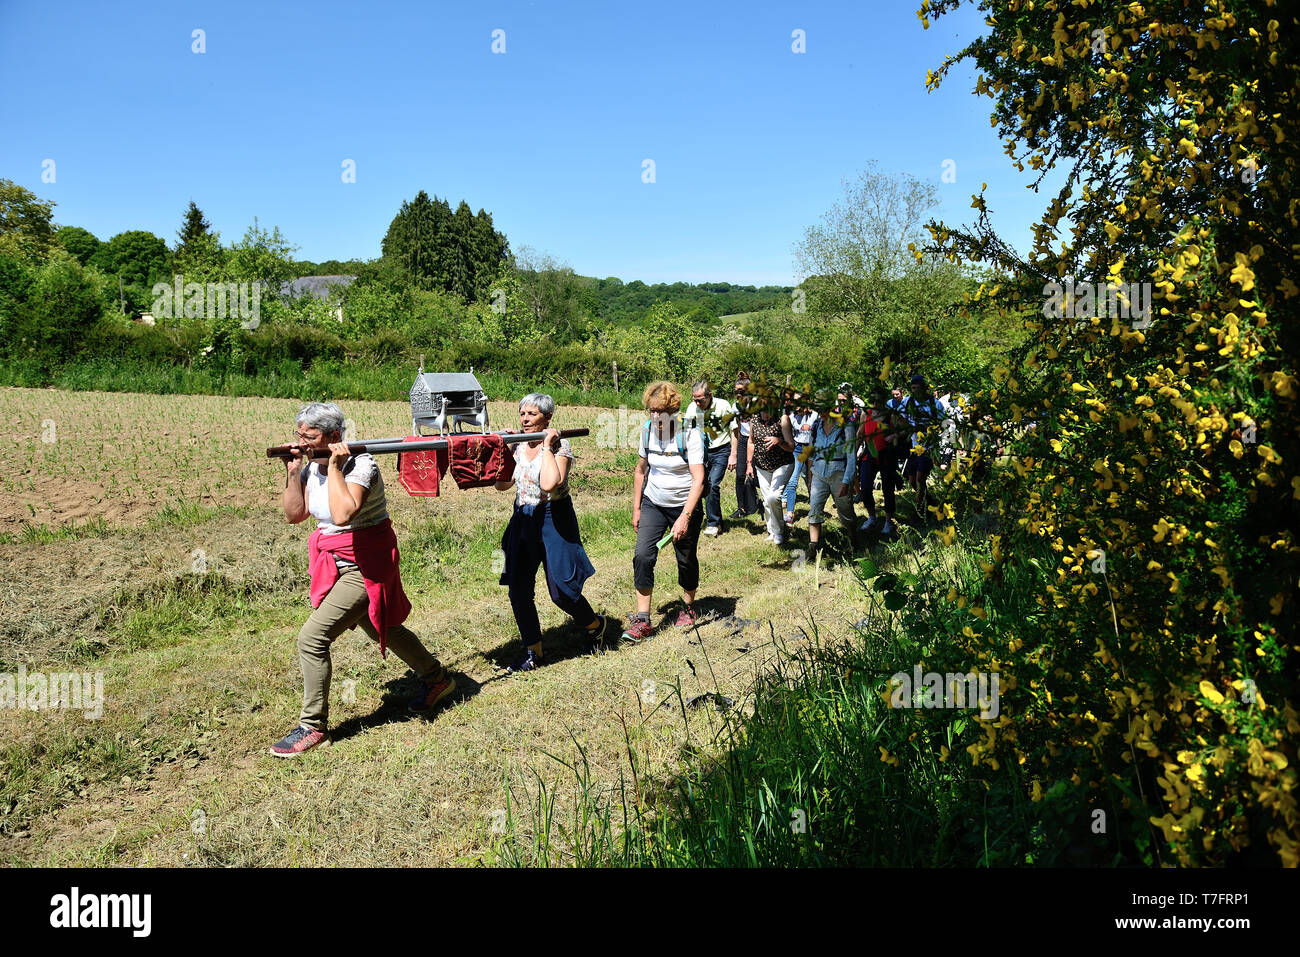 Landeleau (Bretagna, a nord-ovest della Francia), su 2018/05/20: annuale Domenica di Pentecoste ÒTromenieÓ Breton perdono. ÒTro ar relegouÓ processione attorno al villaggio Foto Stock